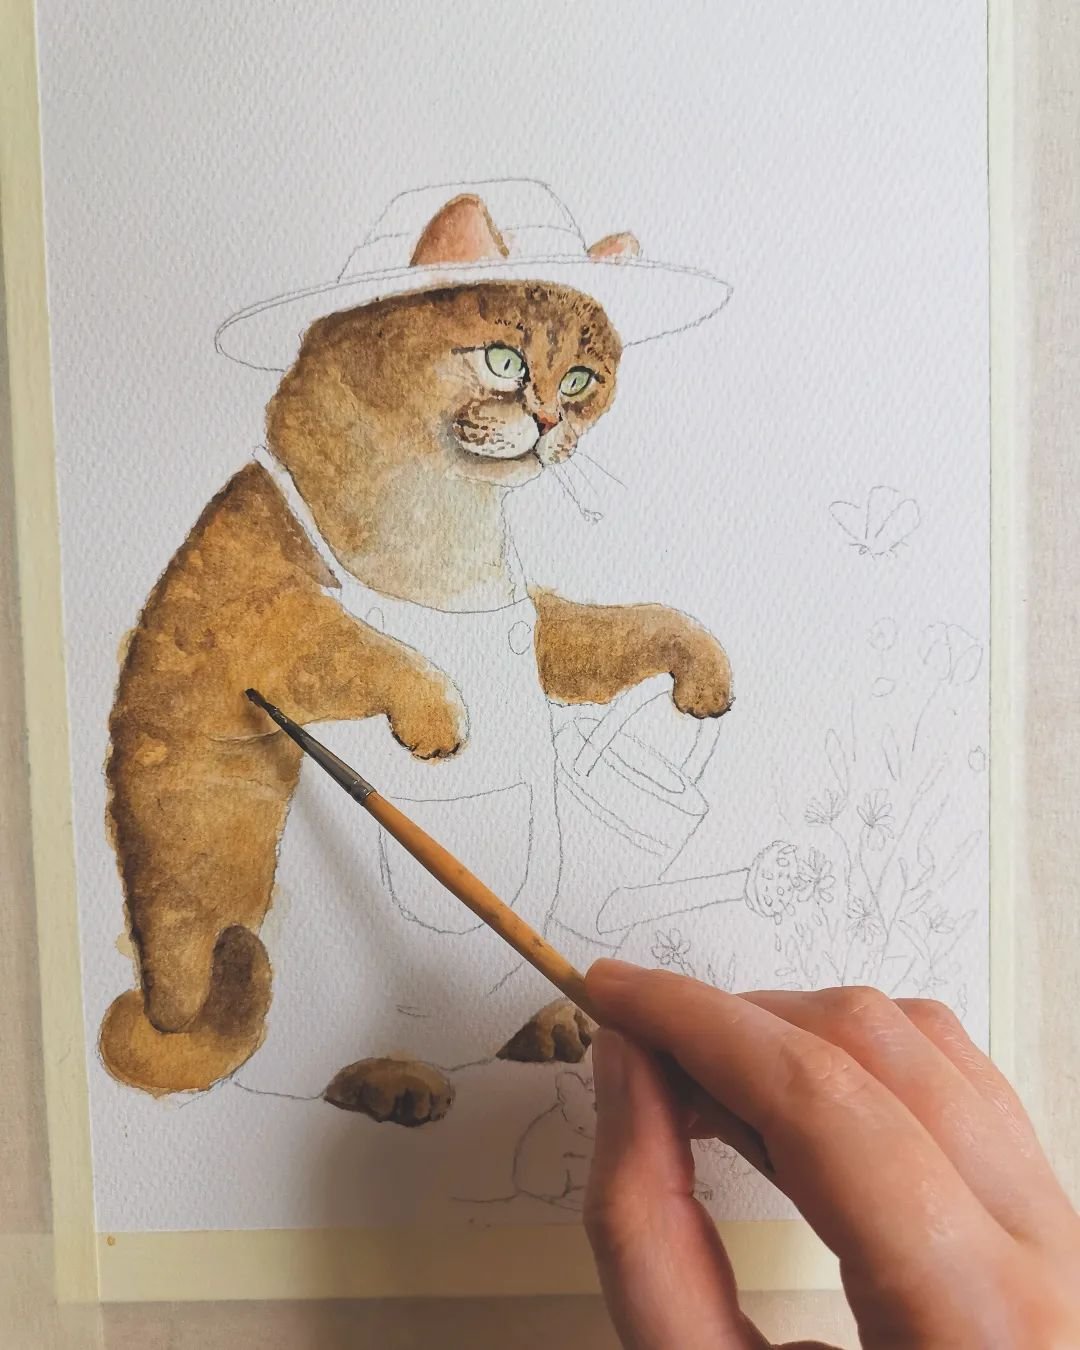 Eine kleine G&auml;rtnerkatze in Arbeit. Sp&auml;ter poste ich nochmal das gesamte Werk. Aber schon im malerischen Prozess wirkt die kleine Miez unglaublich magisch. 🌱🌼

#thepaperycats #painting #art #illustration #illustragram #cat #katzenkunst #d